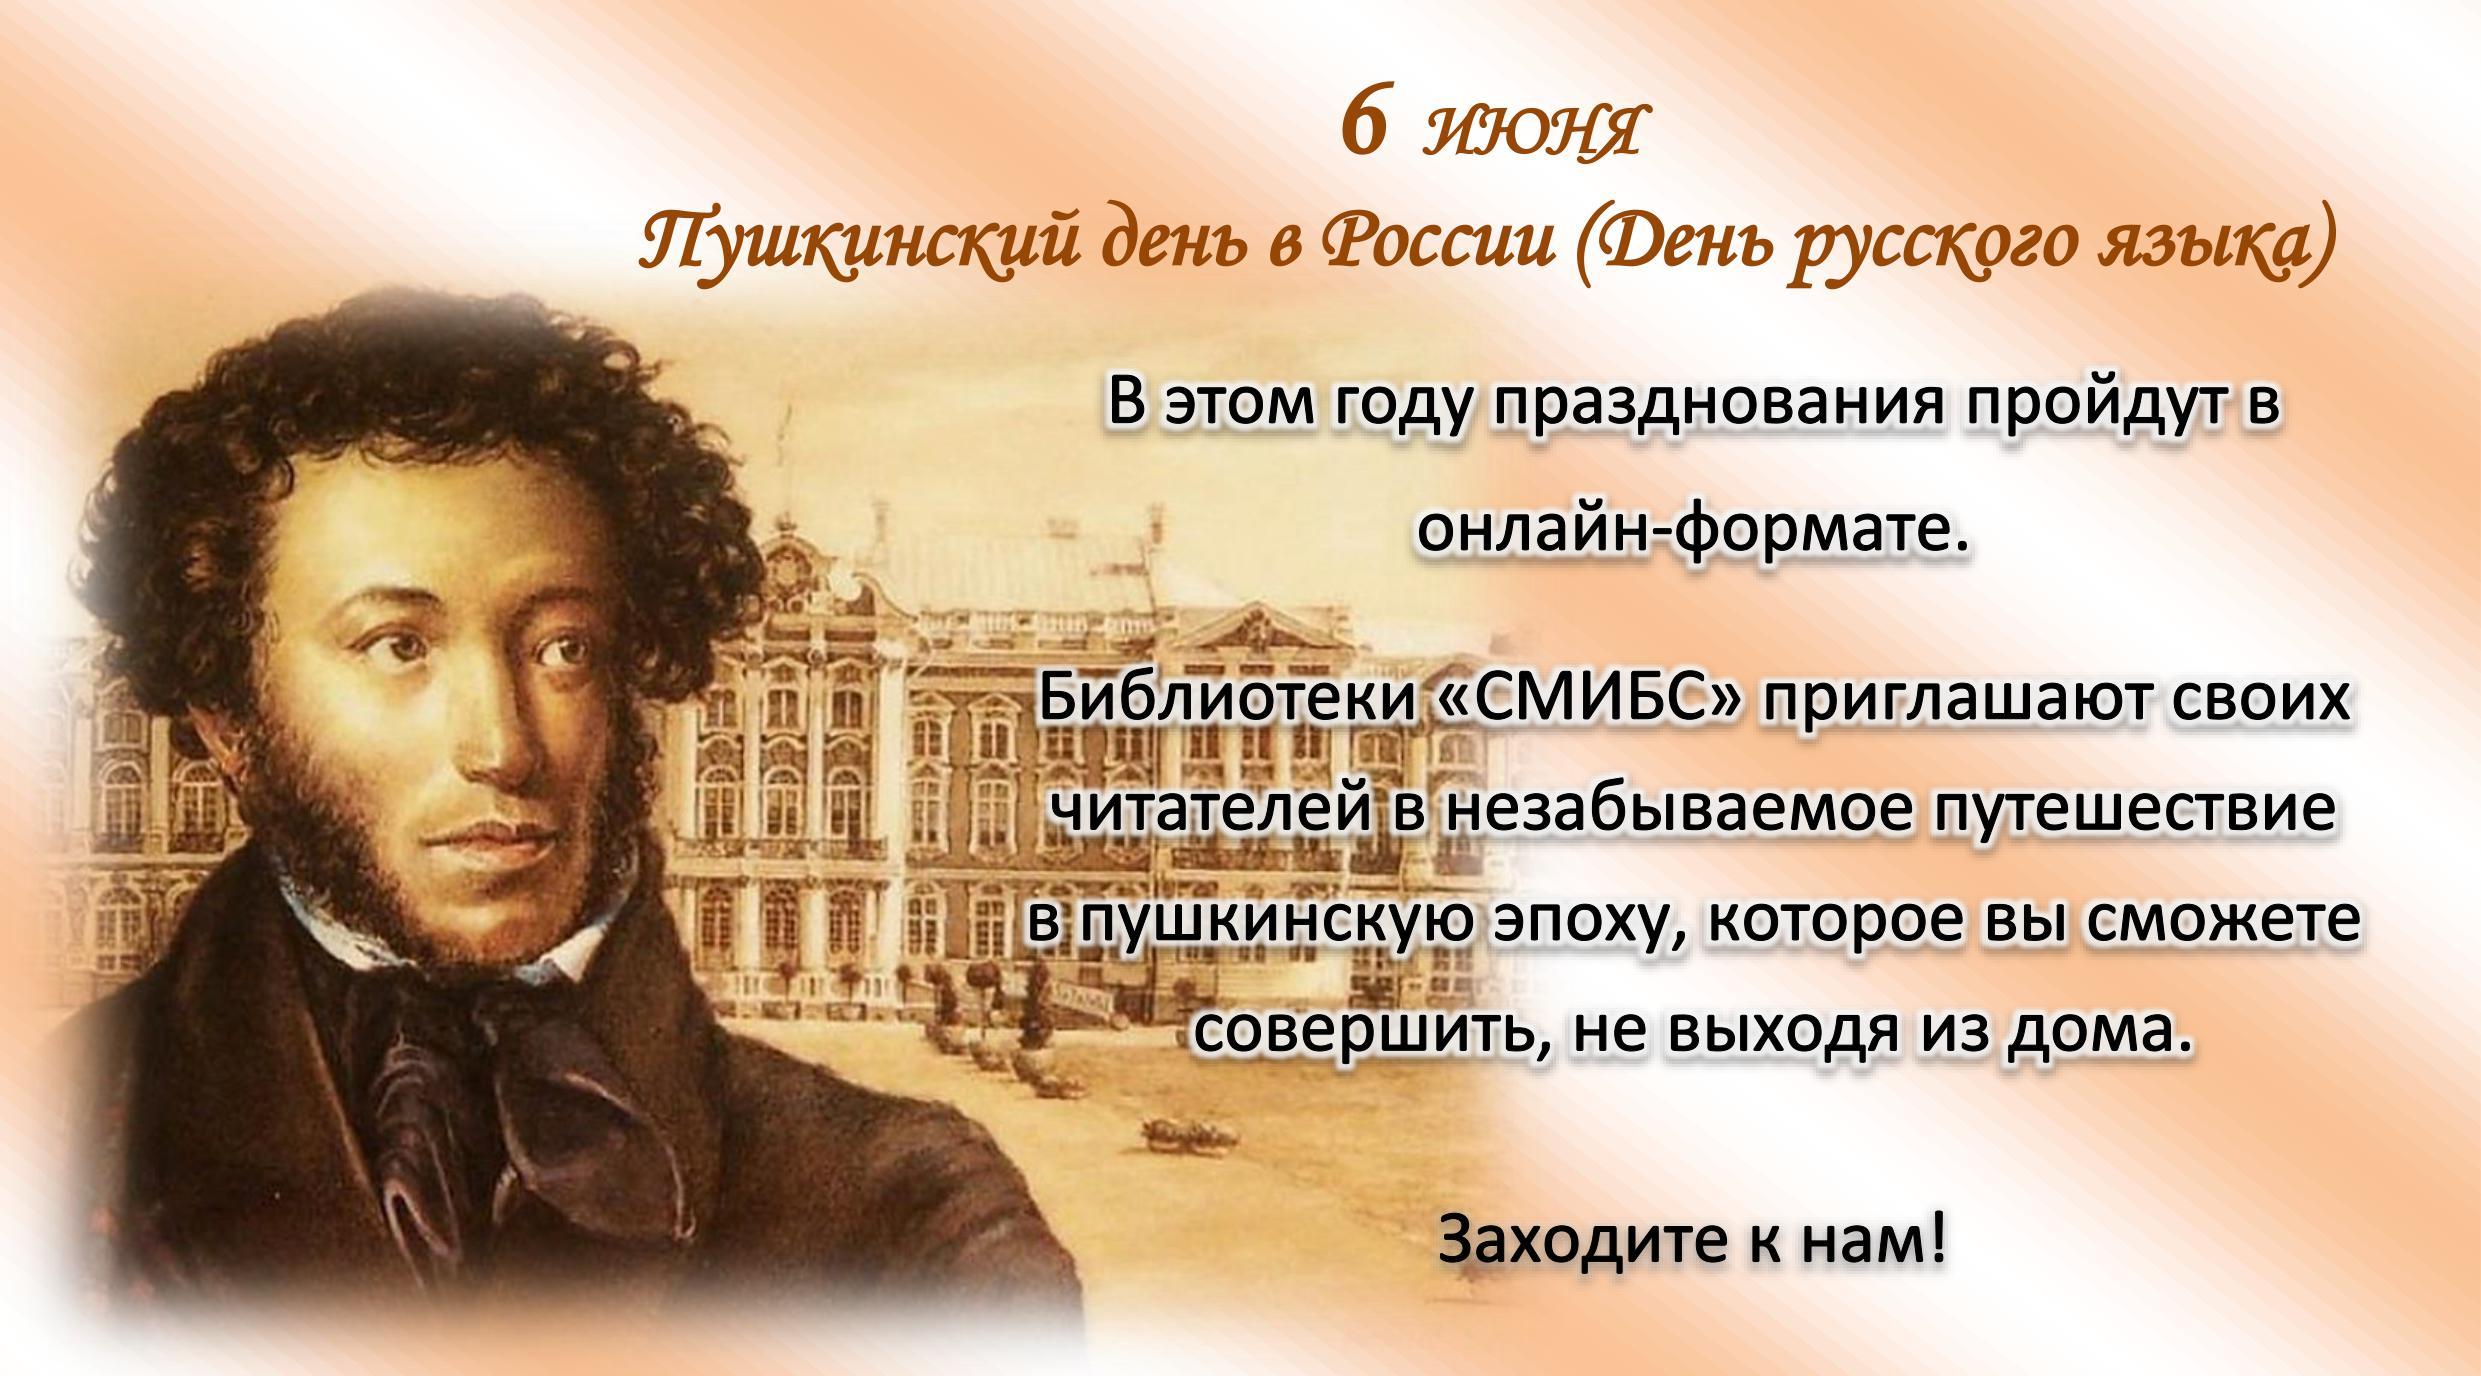 Пушкин 1 июня